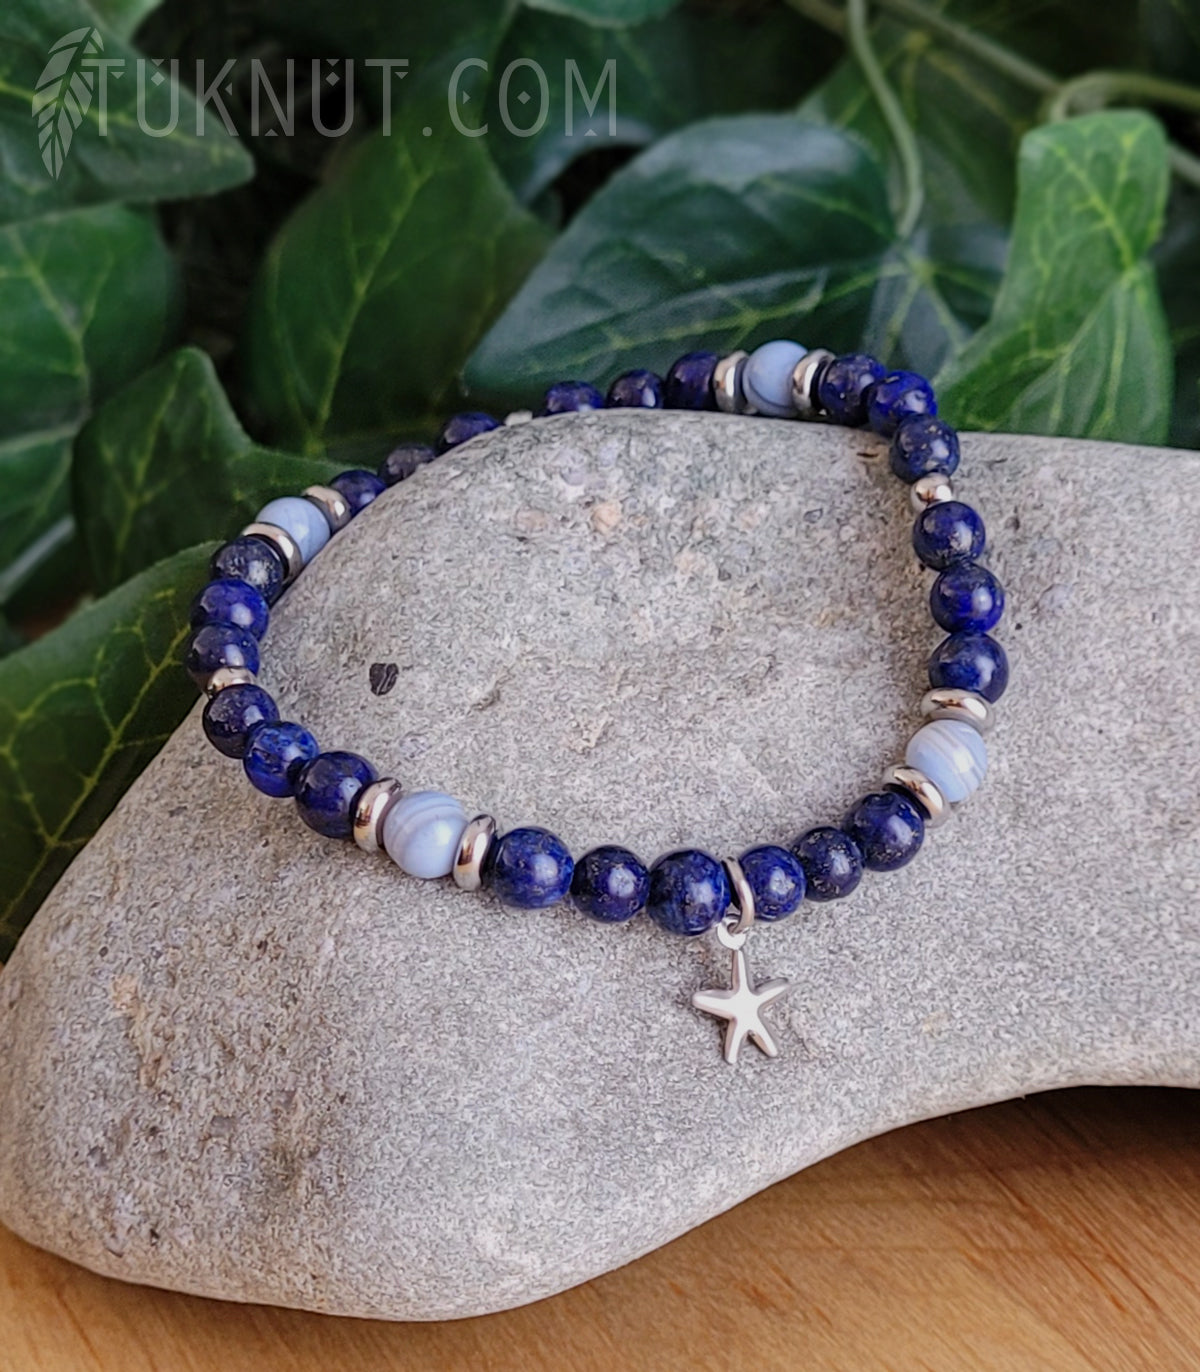 Bracelet extensible avec lapis lazuli, jade bleu clair, billes et breloque (étoile de mer) en acier inoxydable (couleurs : bleu et argent) TUKNUT